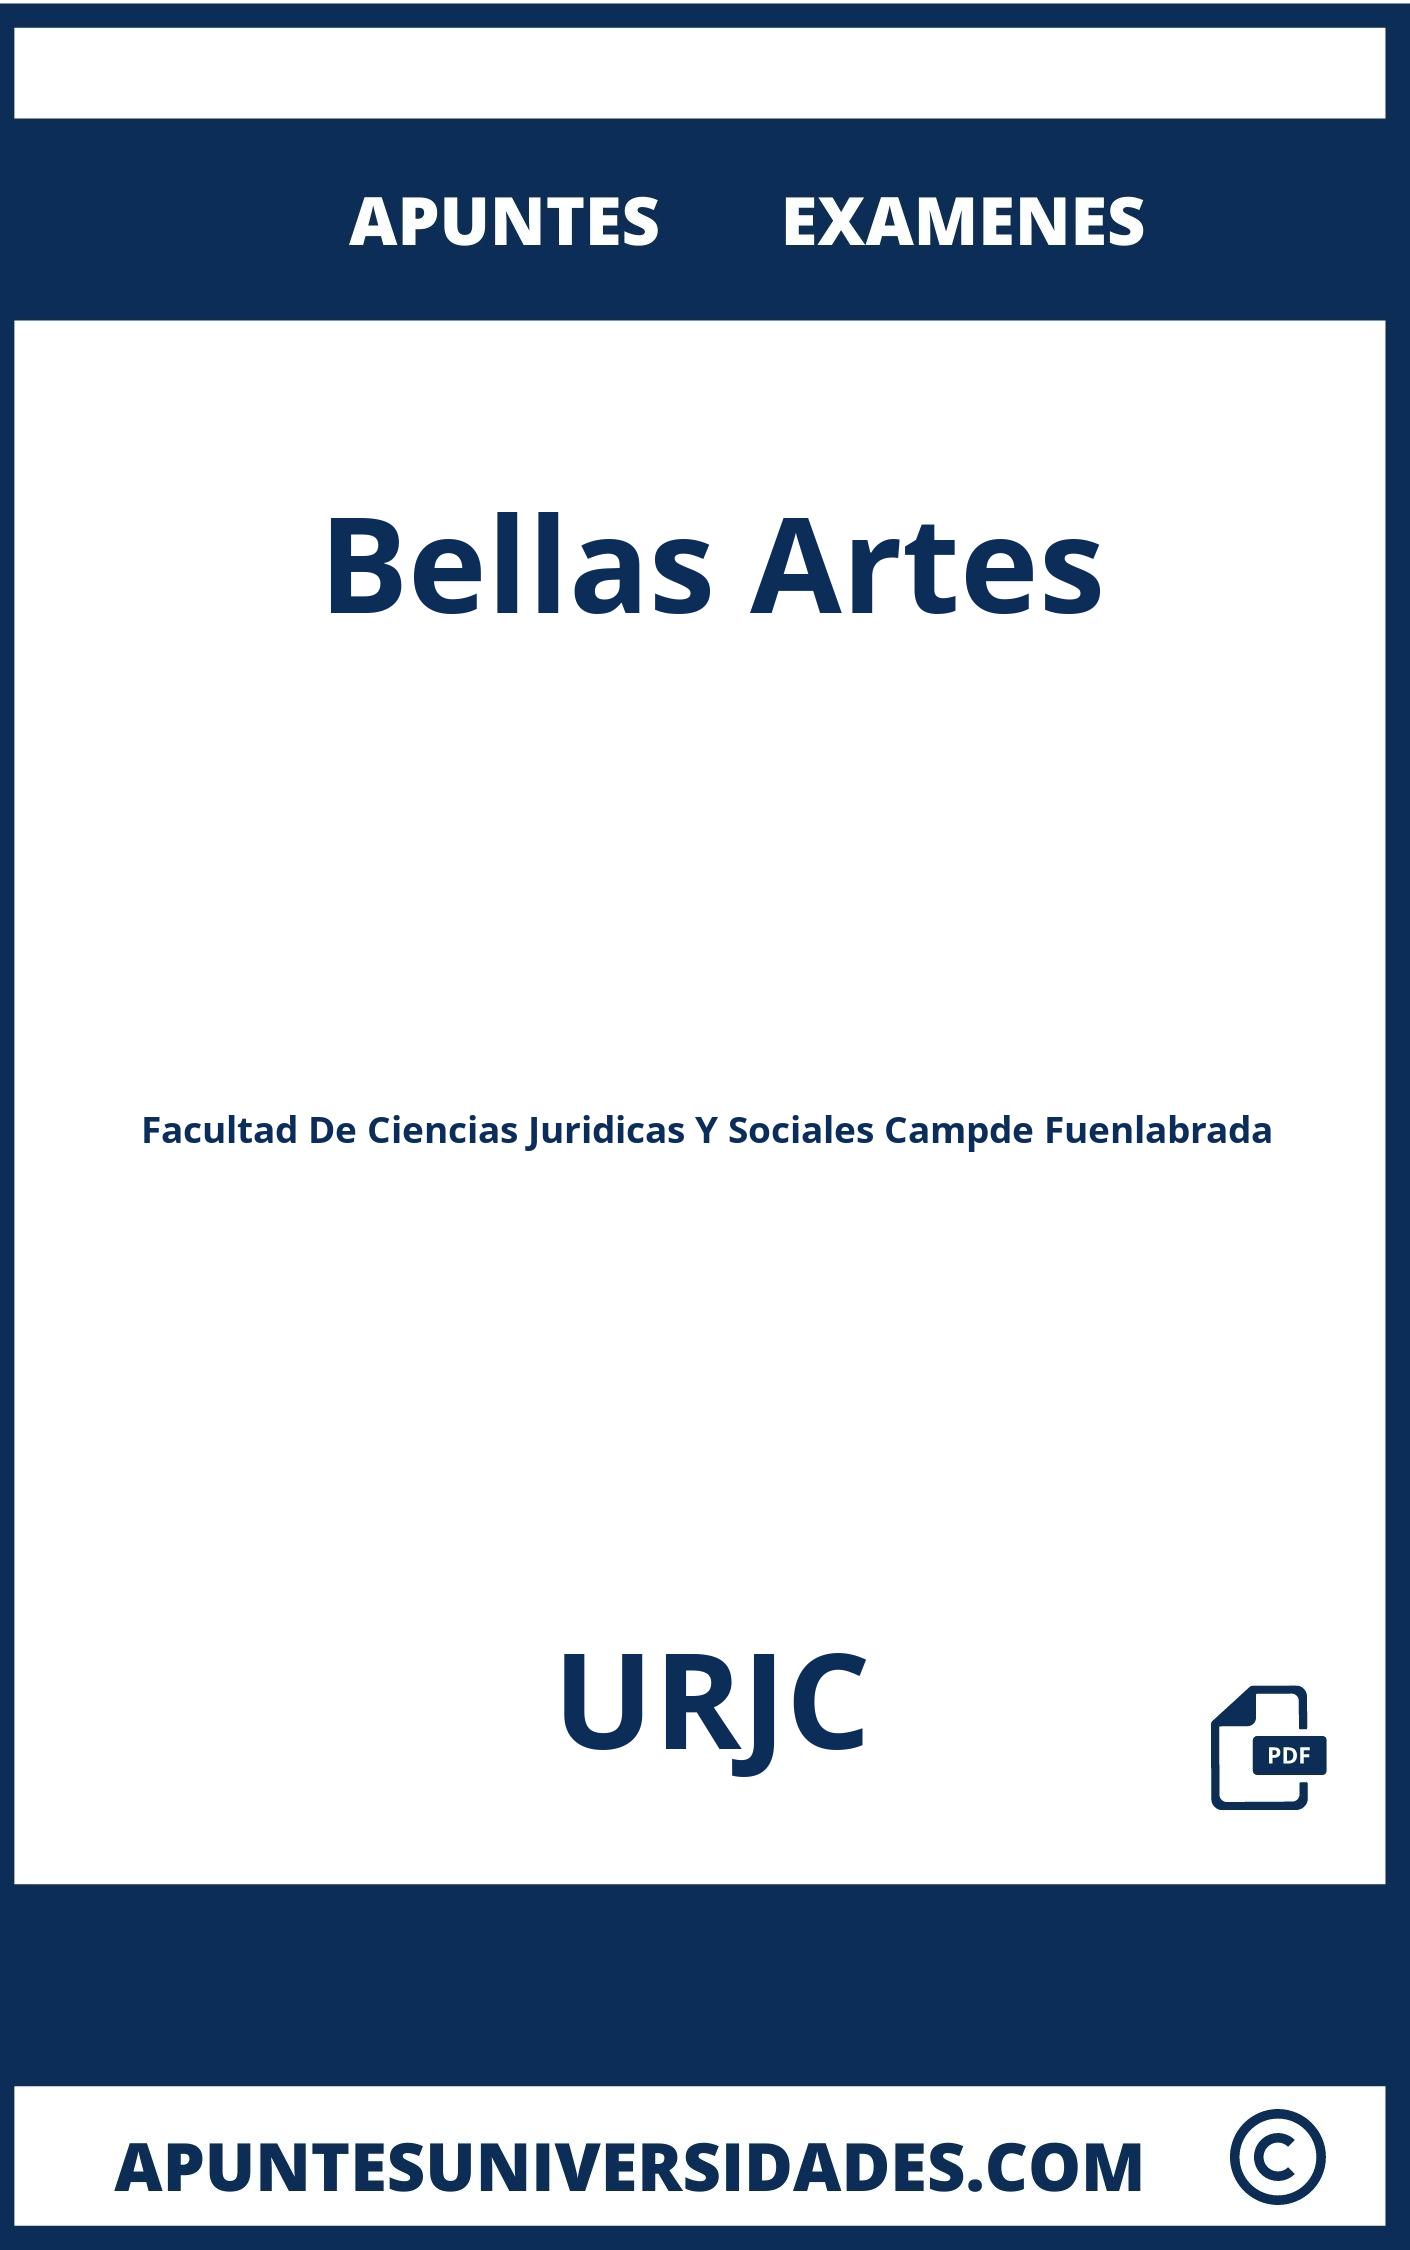 Examenes y Apuntes de Bellas Artes URJC